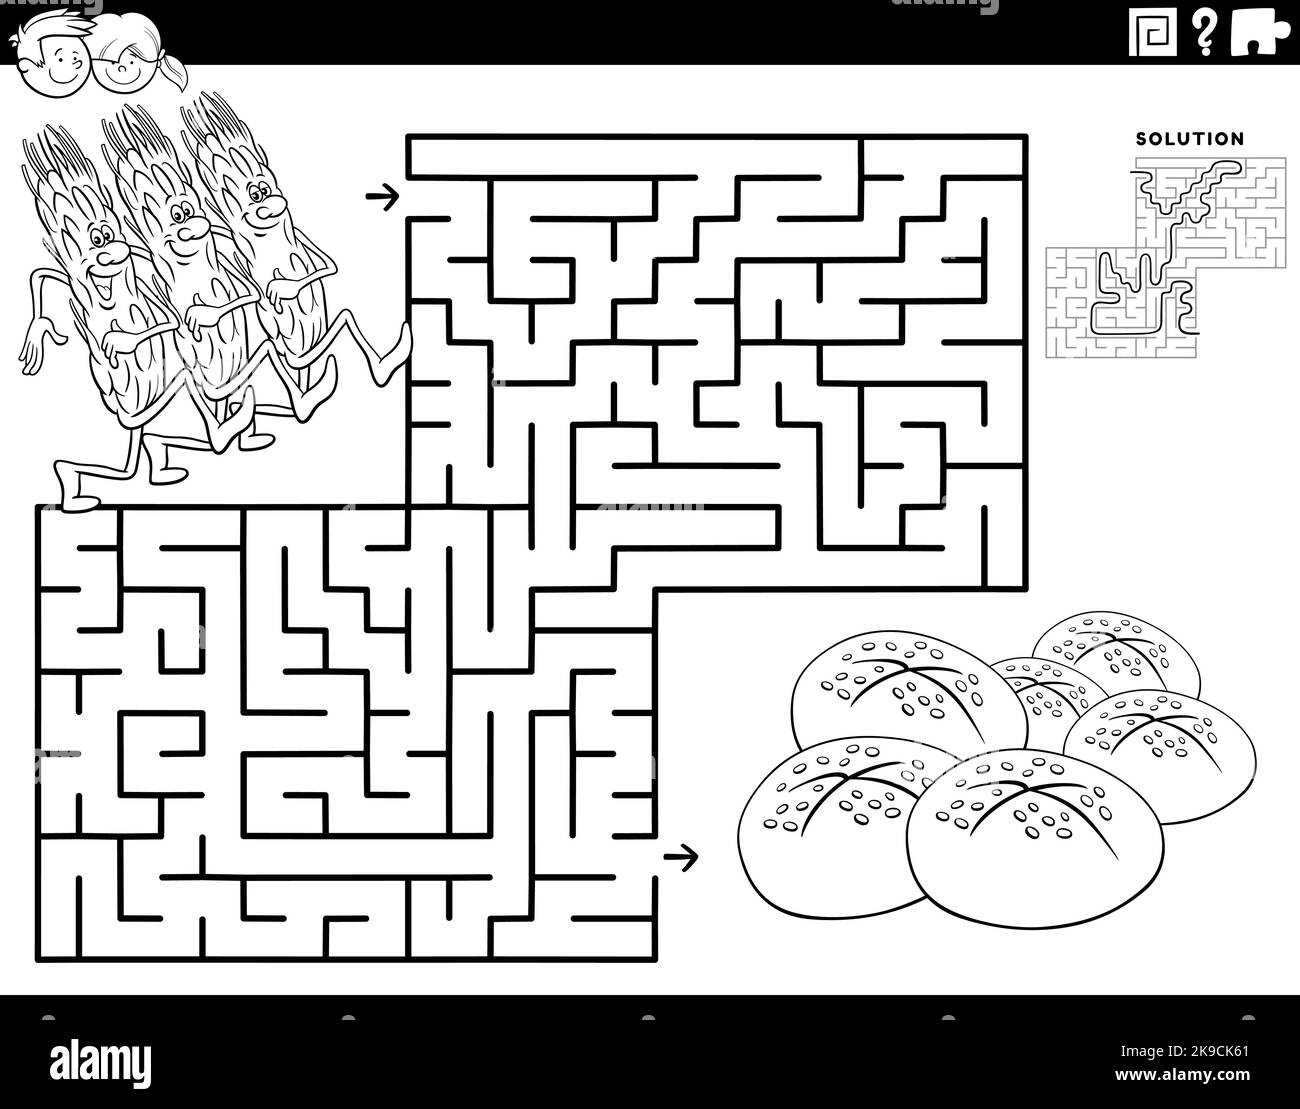 Schwarz-Weiß-Cartoon-Illustration der pädagogischen Labyrinth Puzzle-Spiel für Kinder mit Ähren von Getreide und Brot Färbung Seite Stock Vektor